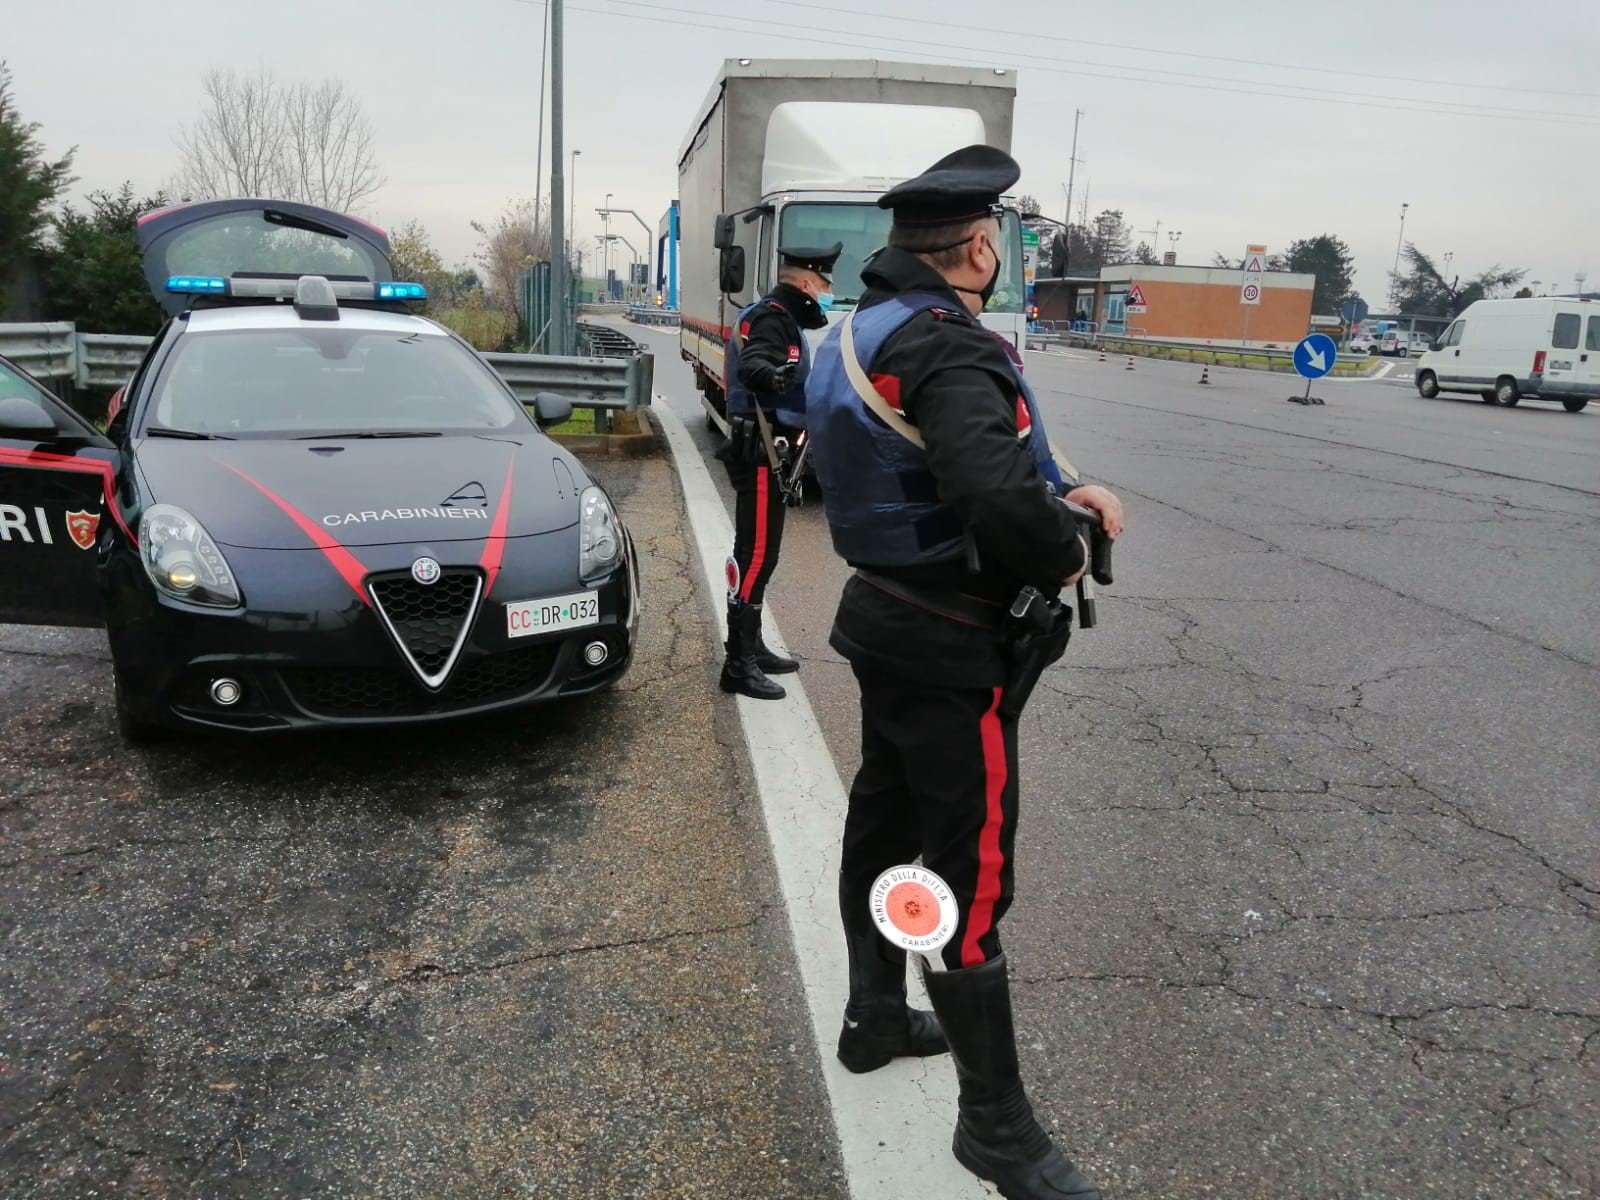 Carabinieri di Casale intensificano i controlli contro i furti: sventati già due tentativi